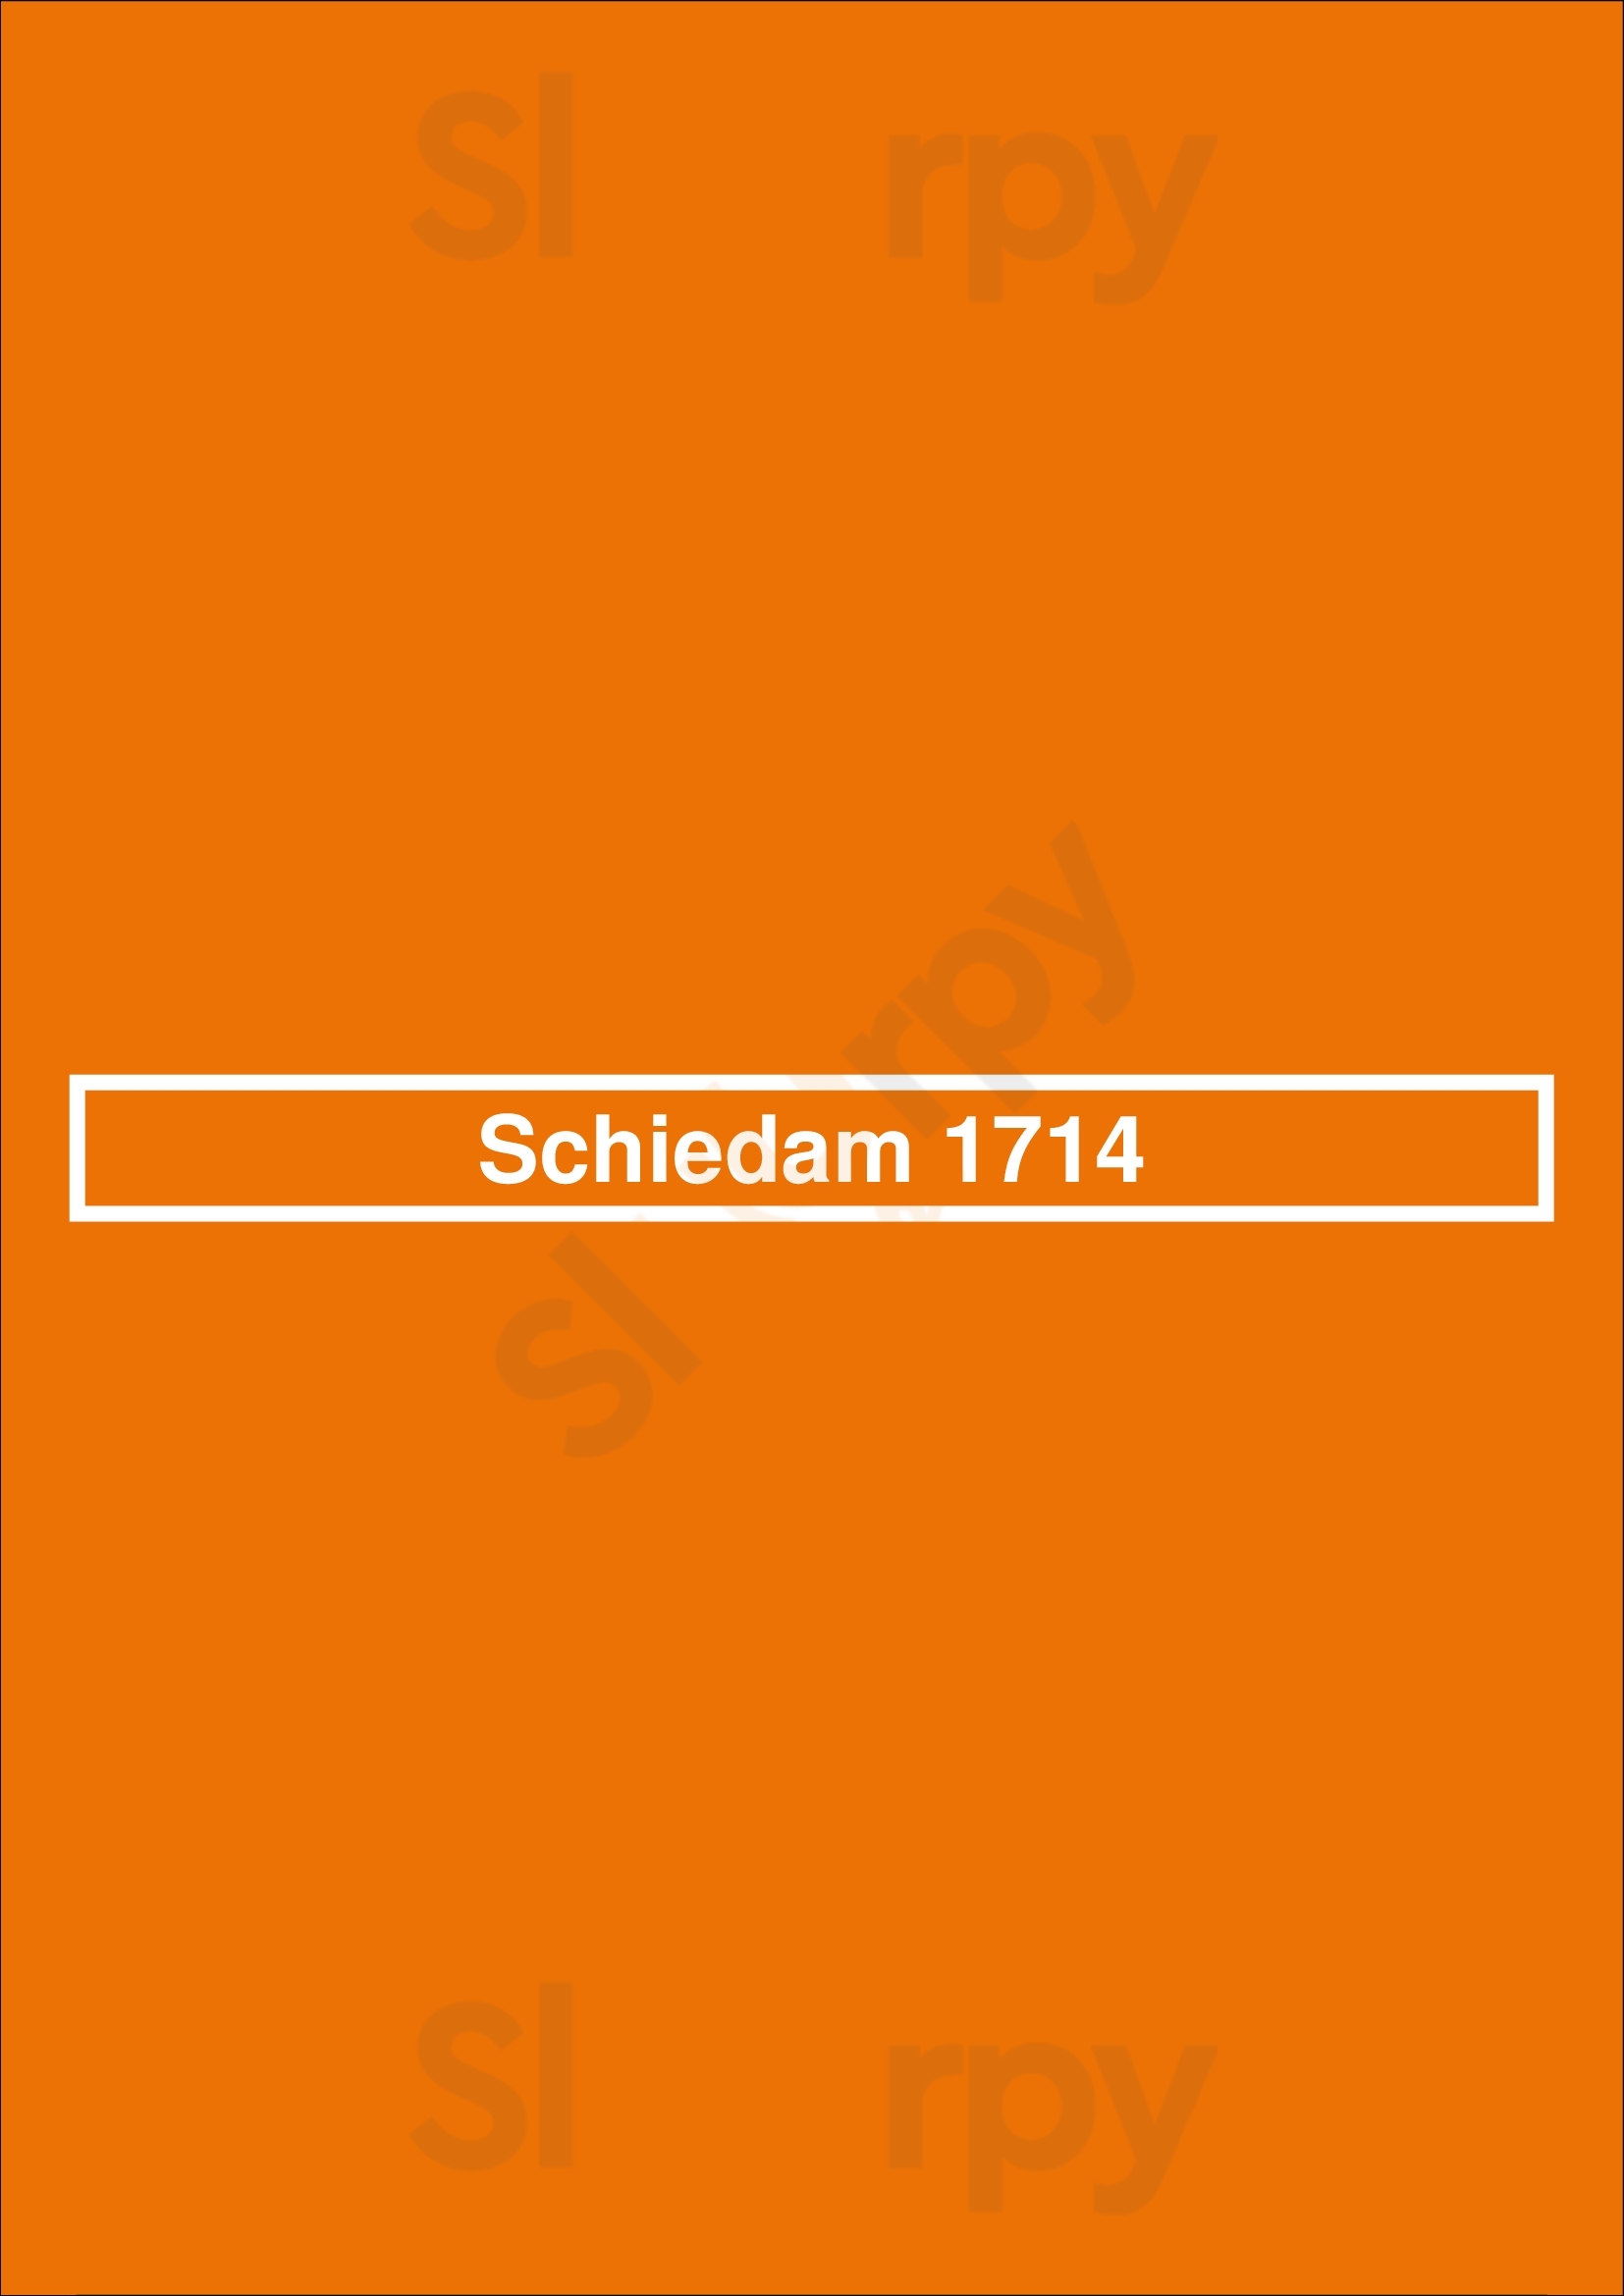 Schiedam 1714 Schiedam Menu - 1